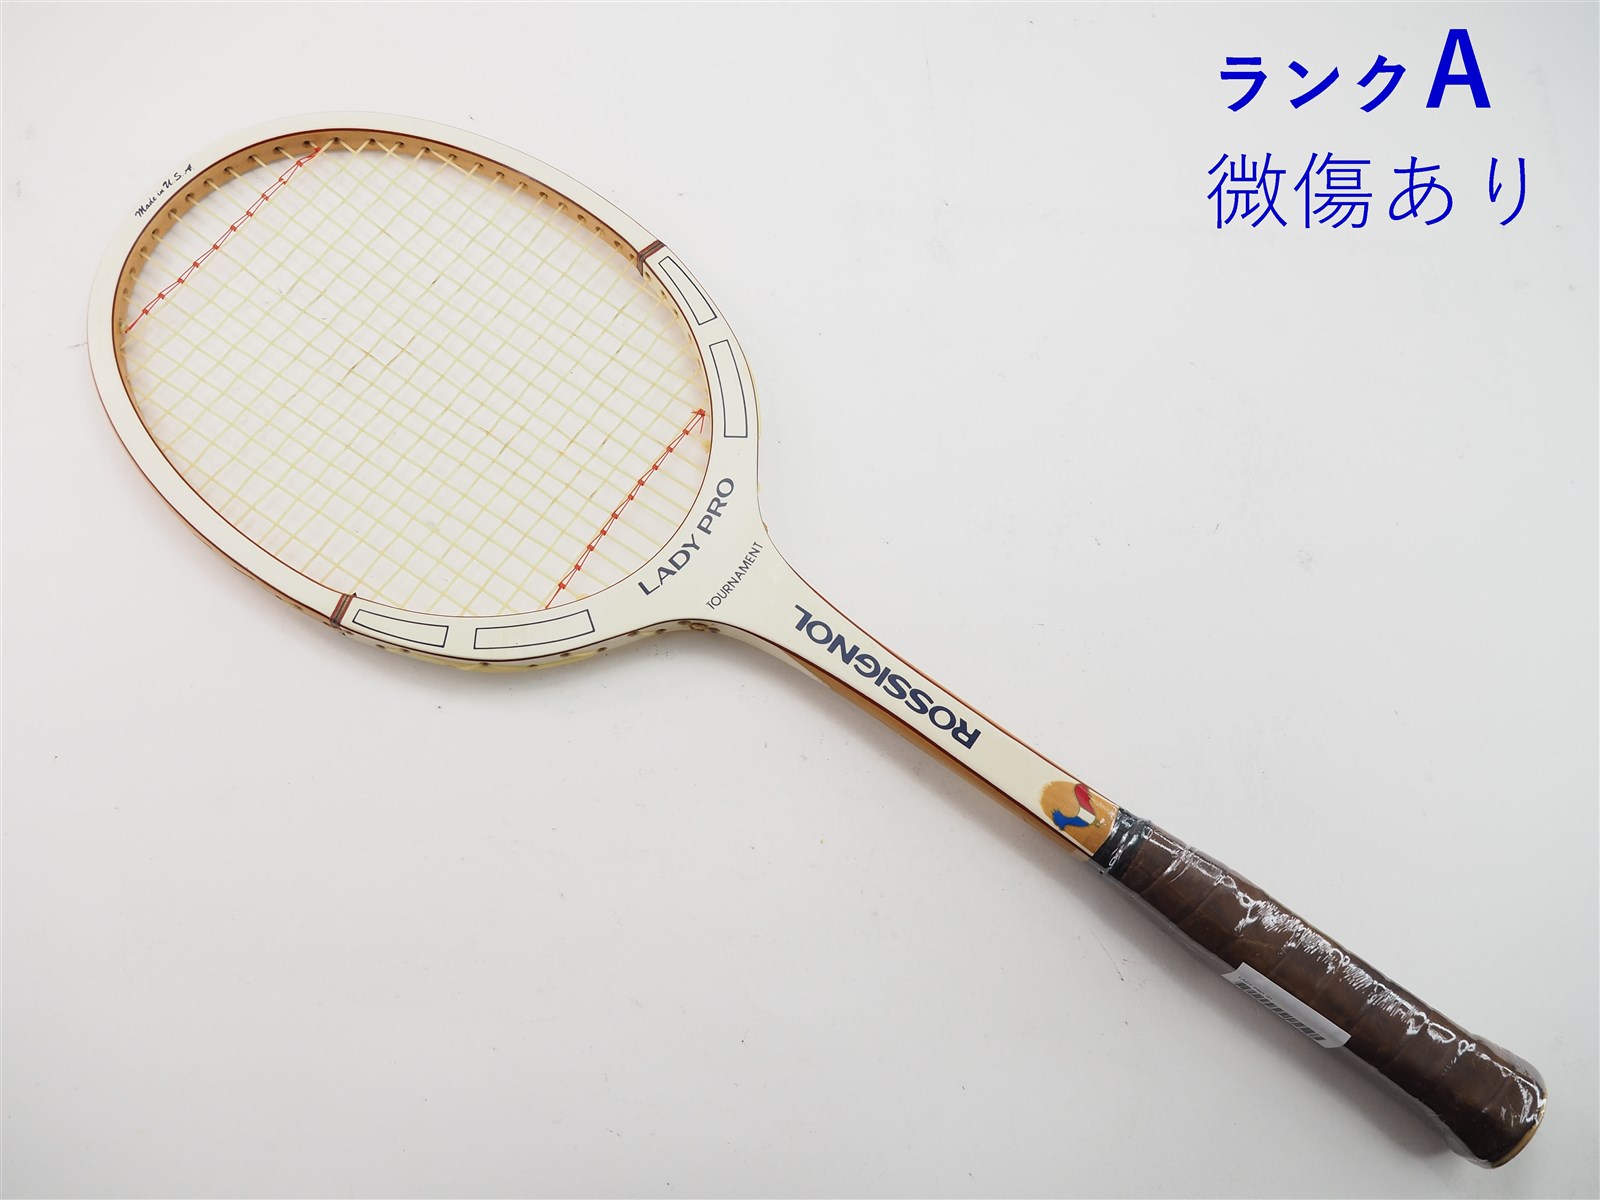 【中古】ロシニョール レディー プロROSSIGNOL LADY PRO(G1相当)【中古 テニスラケット】【送料無料】